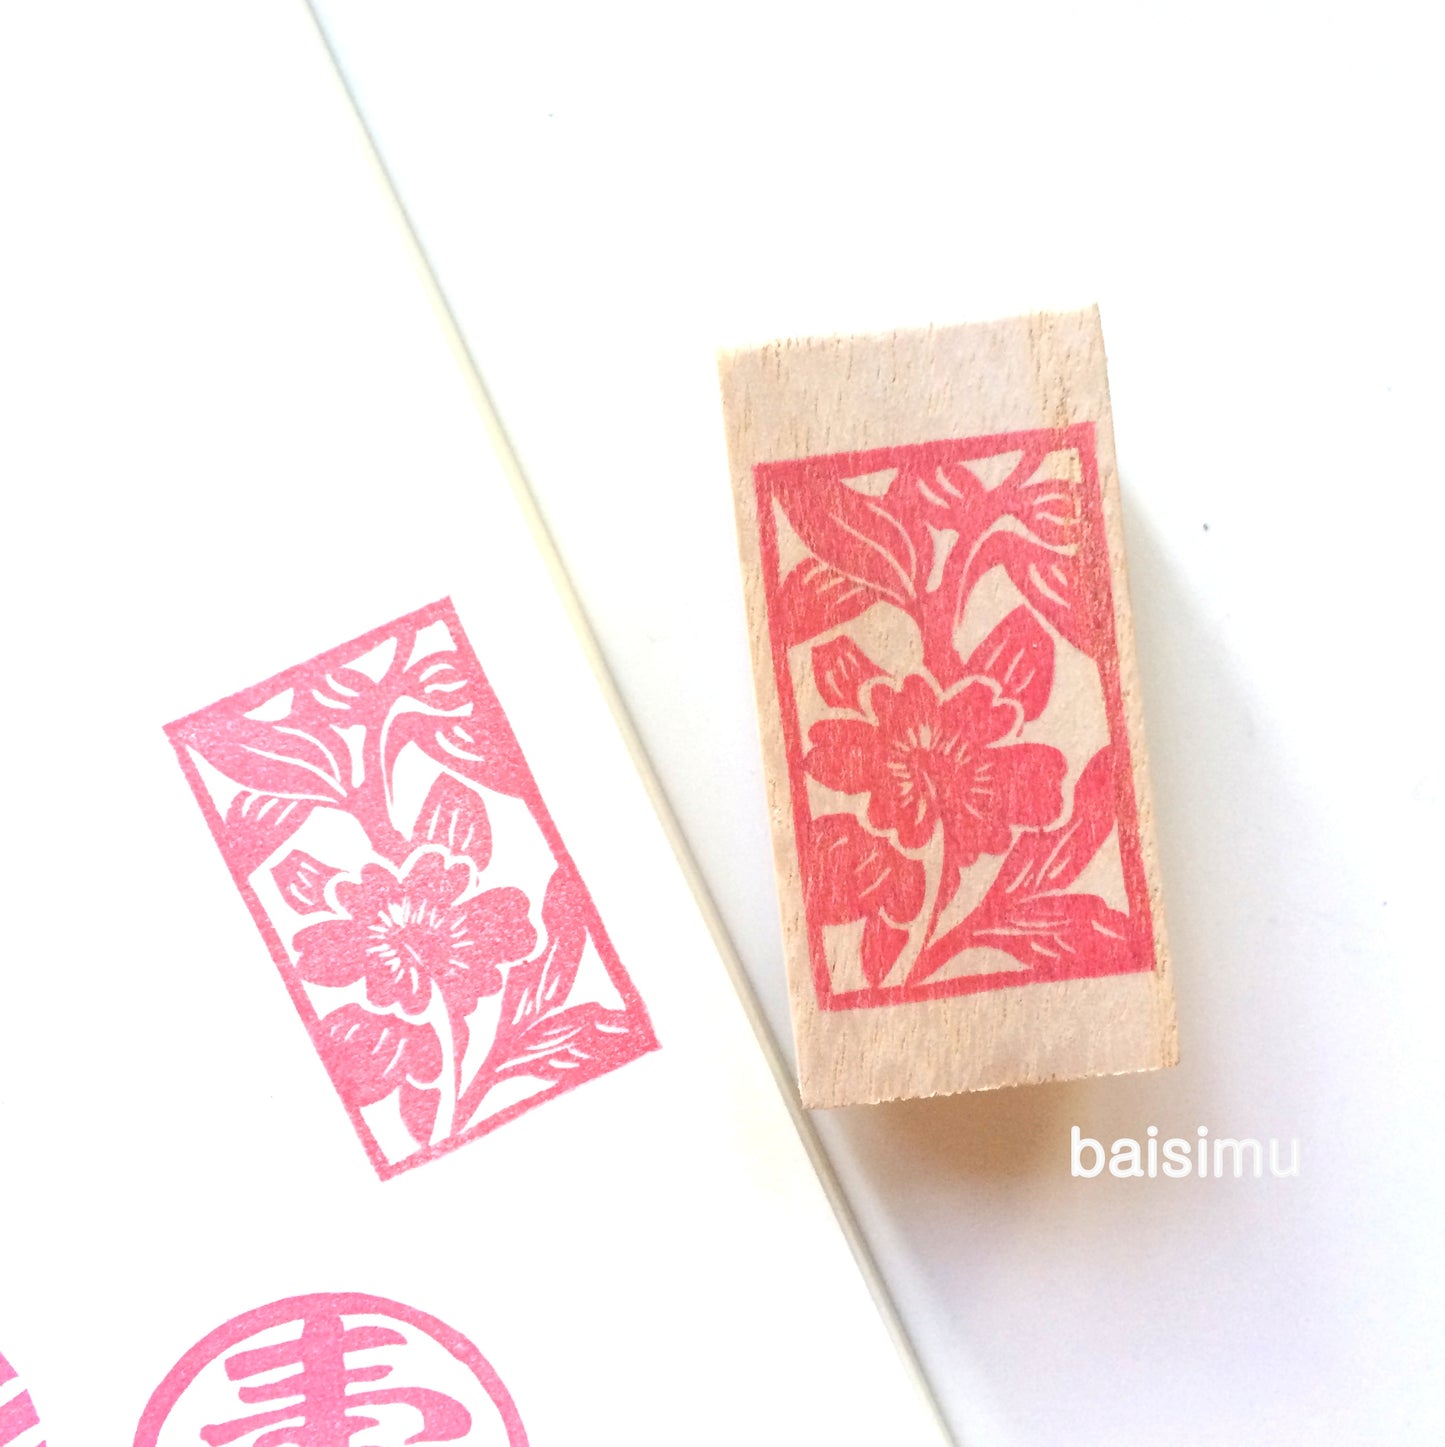 Forbidden city floral stamp